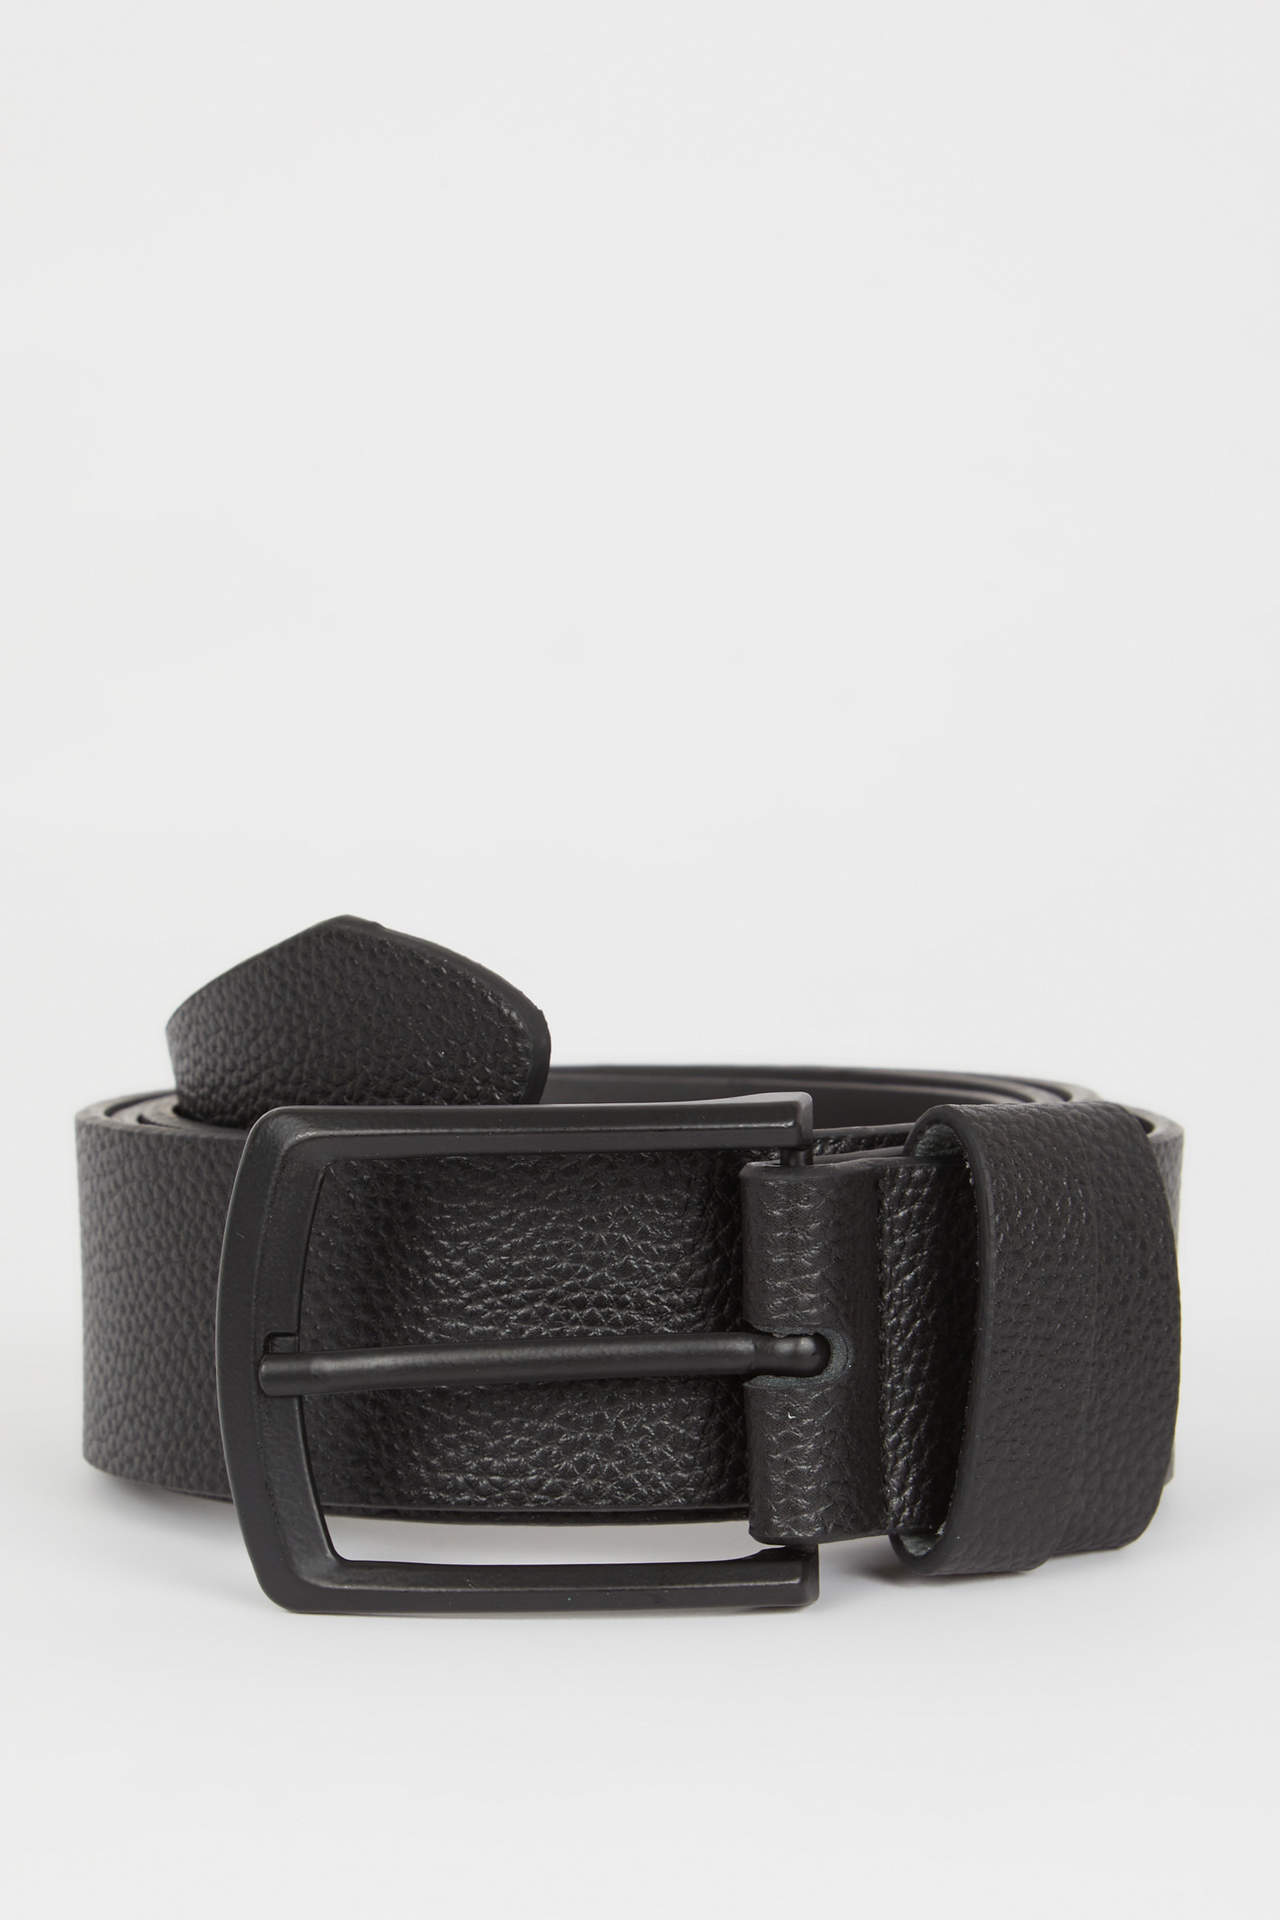 DEFACTO Men's Rectangle Buckle Faux Leather Classic Belt